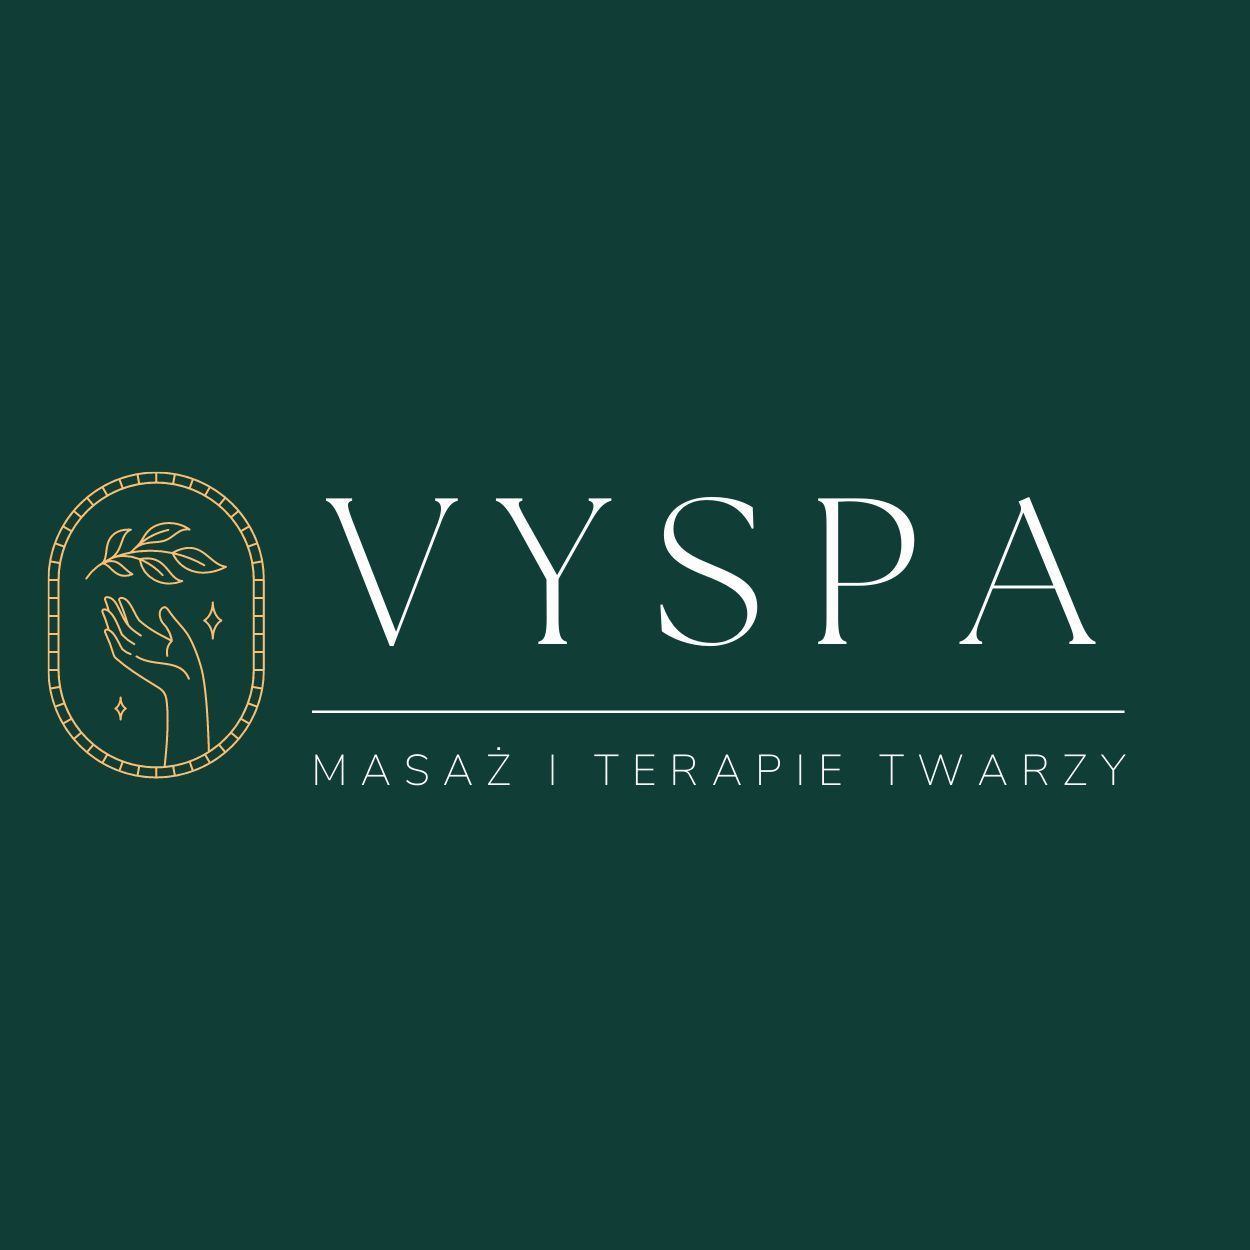 VYSPA Masaż i Terapie Twarzy, Jantarowa 5, lokal 9, 20-582, Lublin